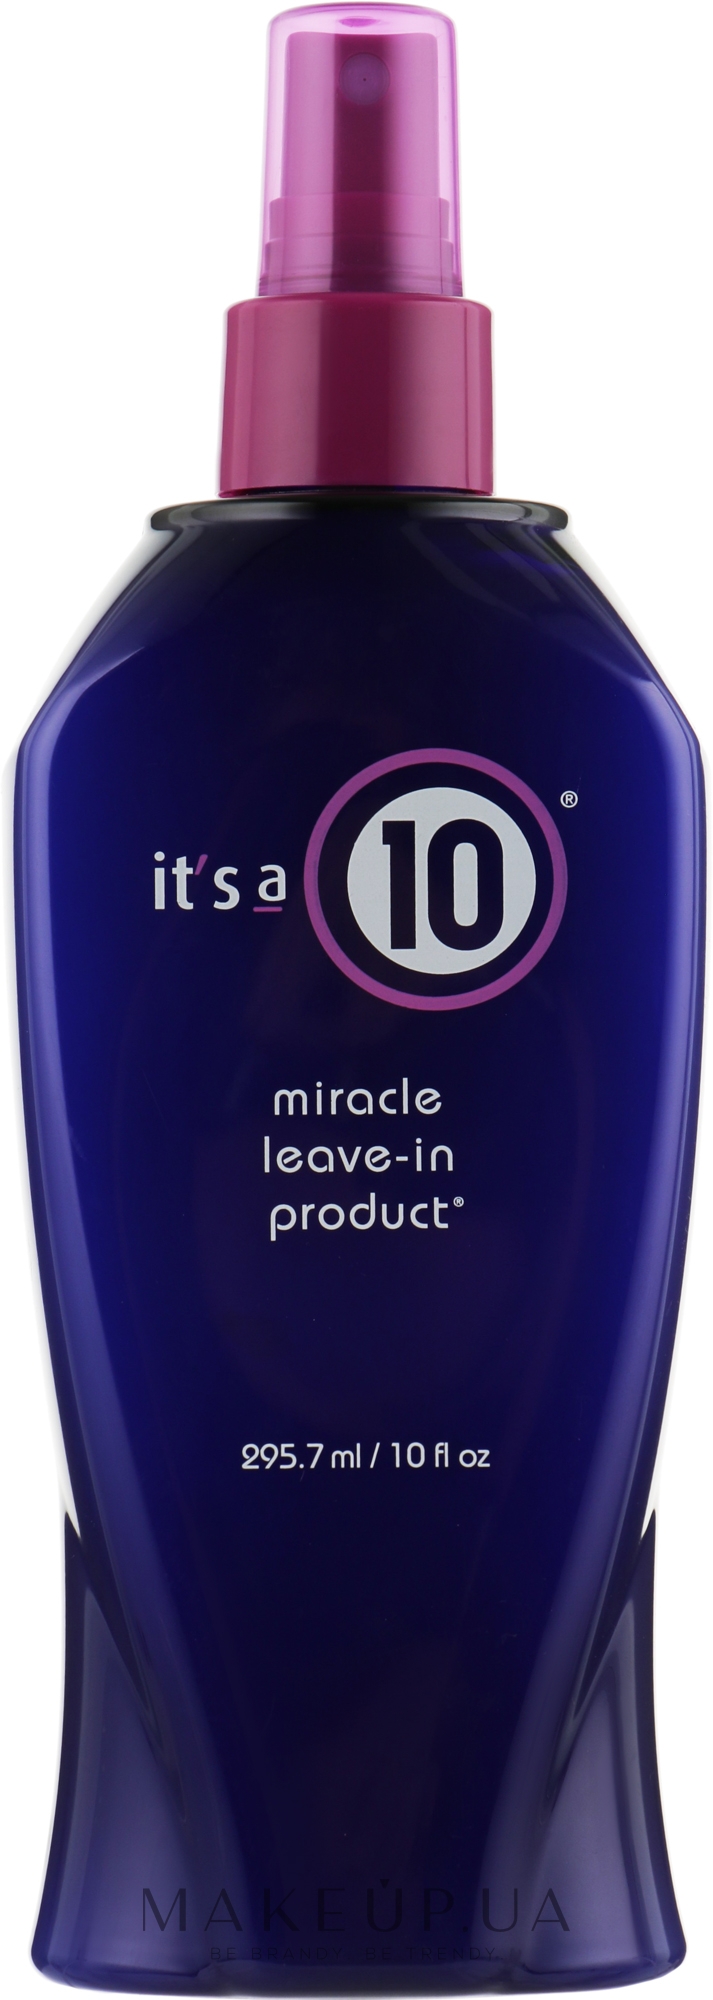 Несмываемый кондиционер для волос - It's a 10 Miracle Leave-in Product — фото 300ml